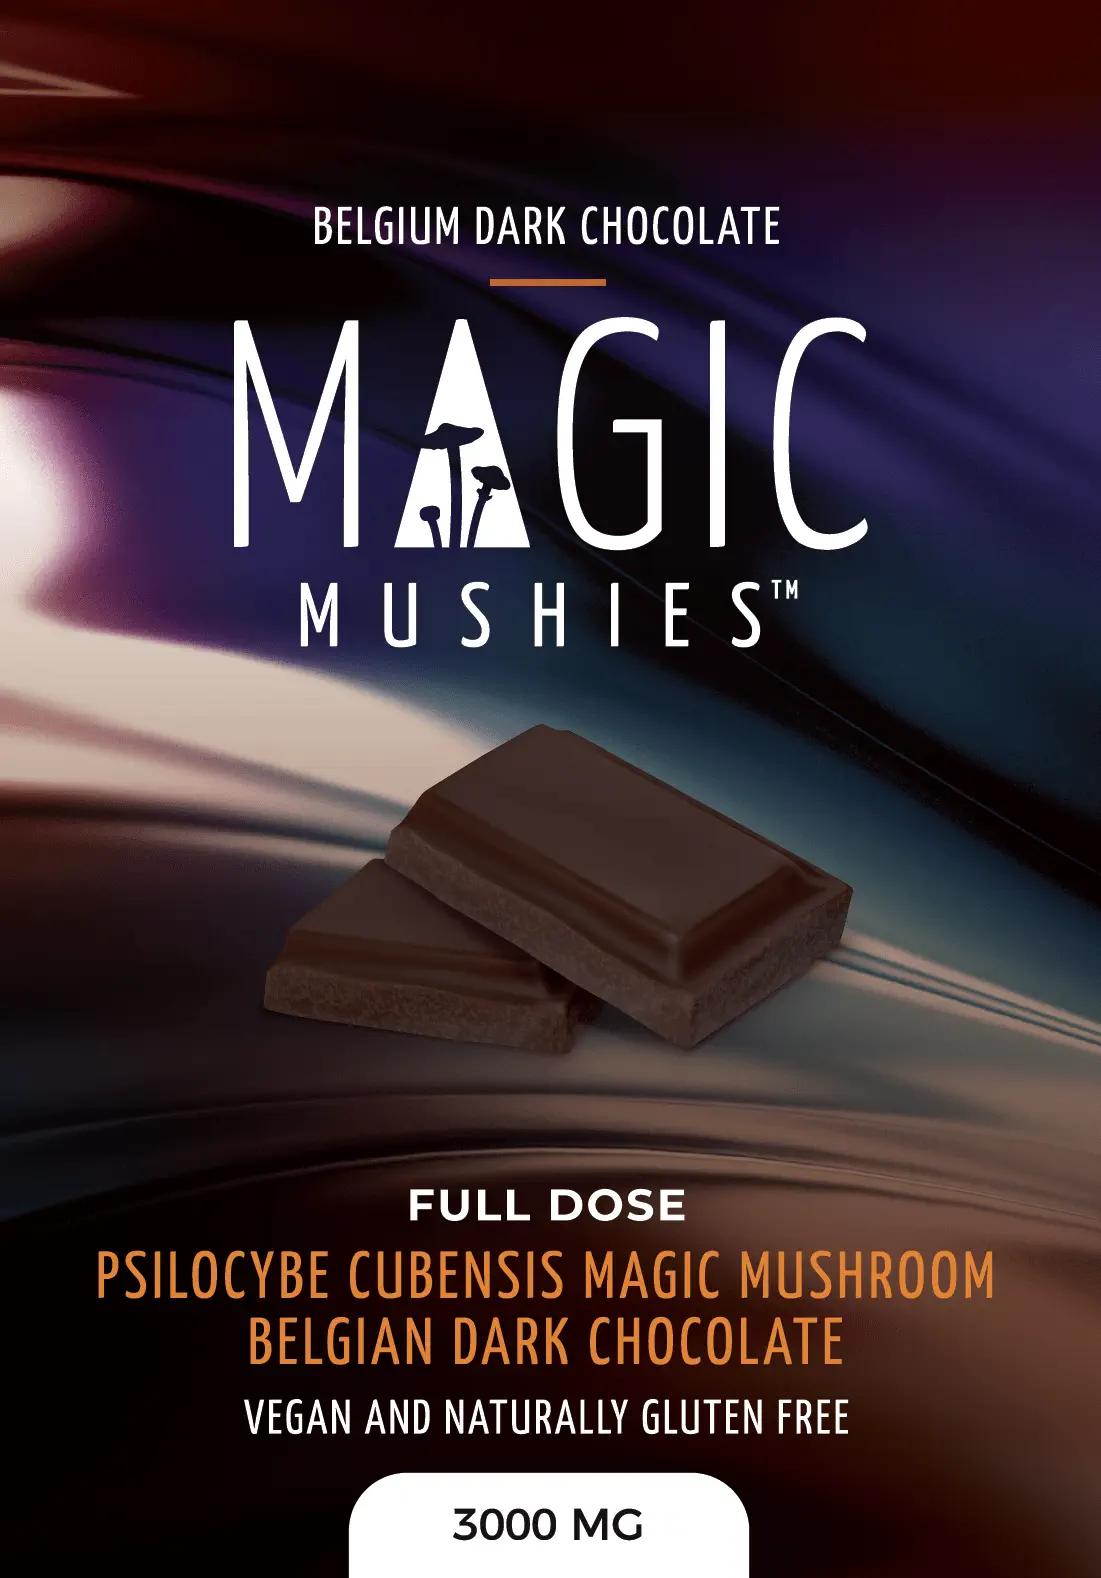 Belgian Dark Chocolate Magic Mushies